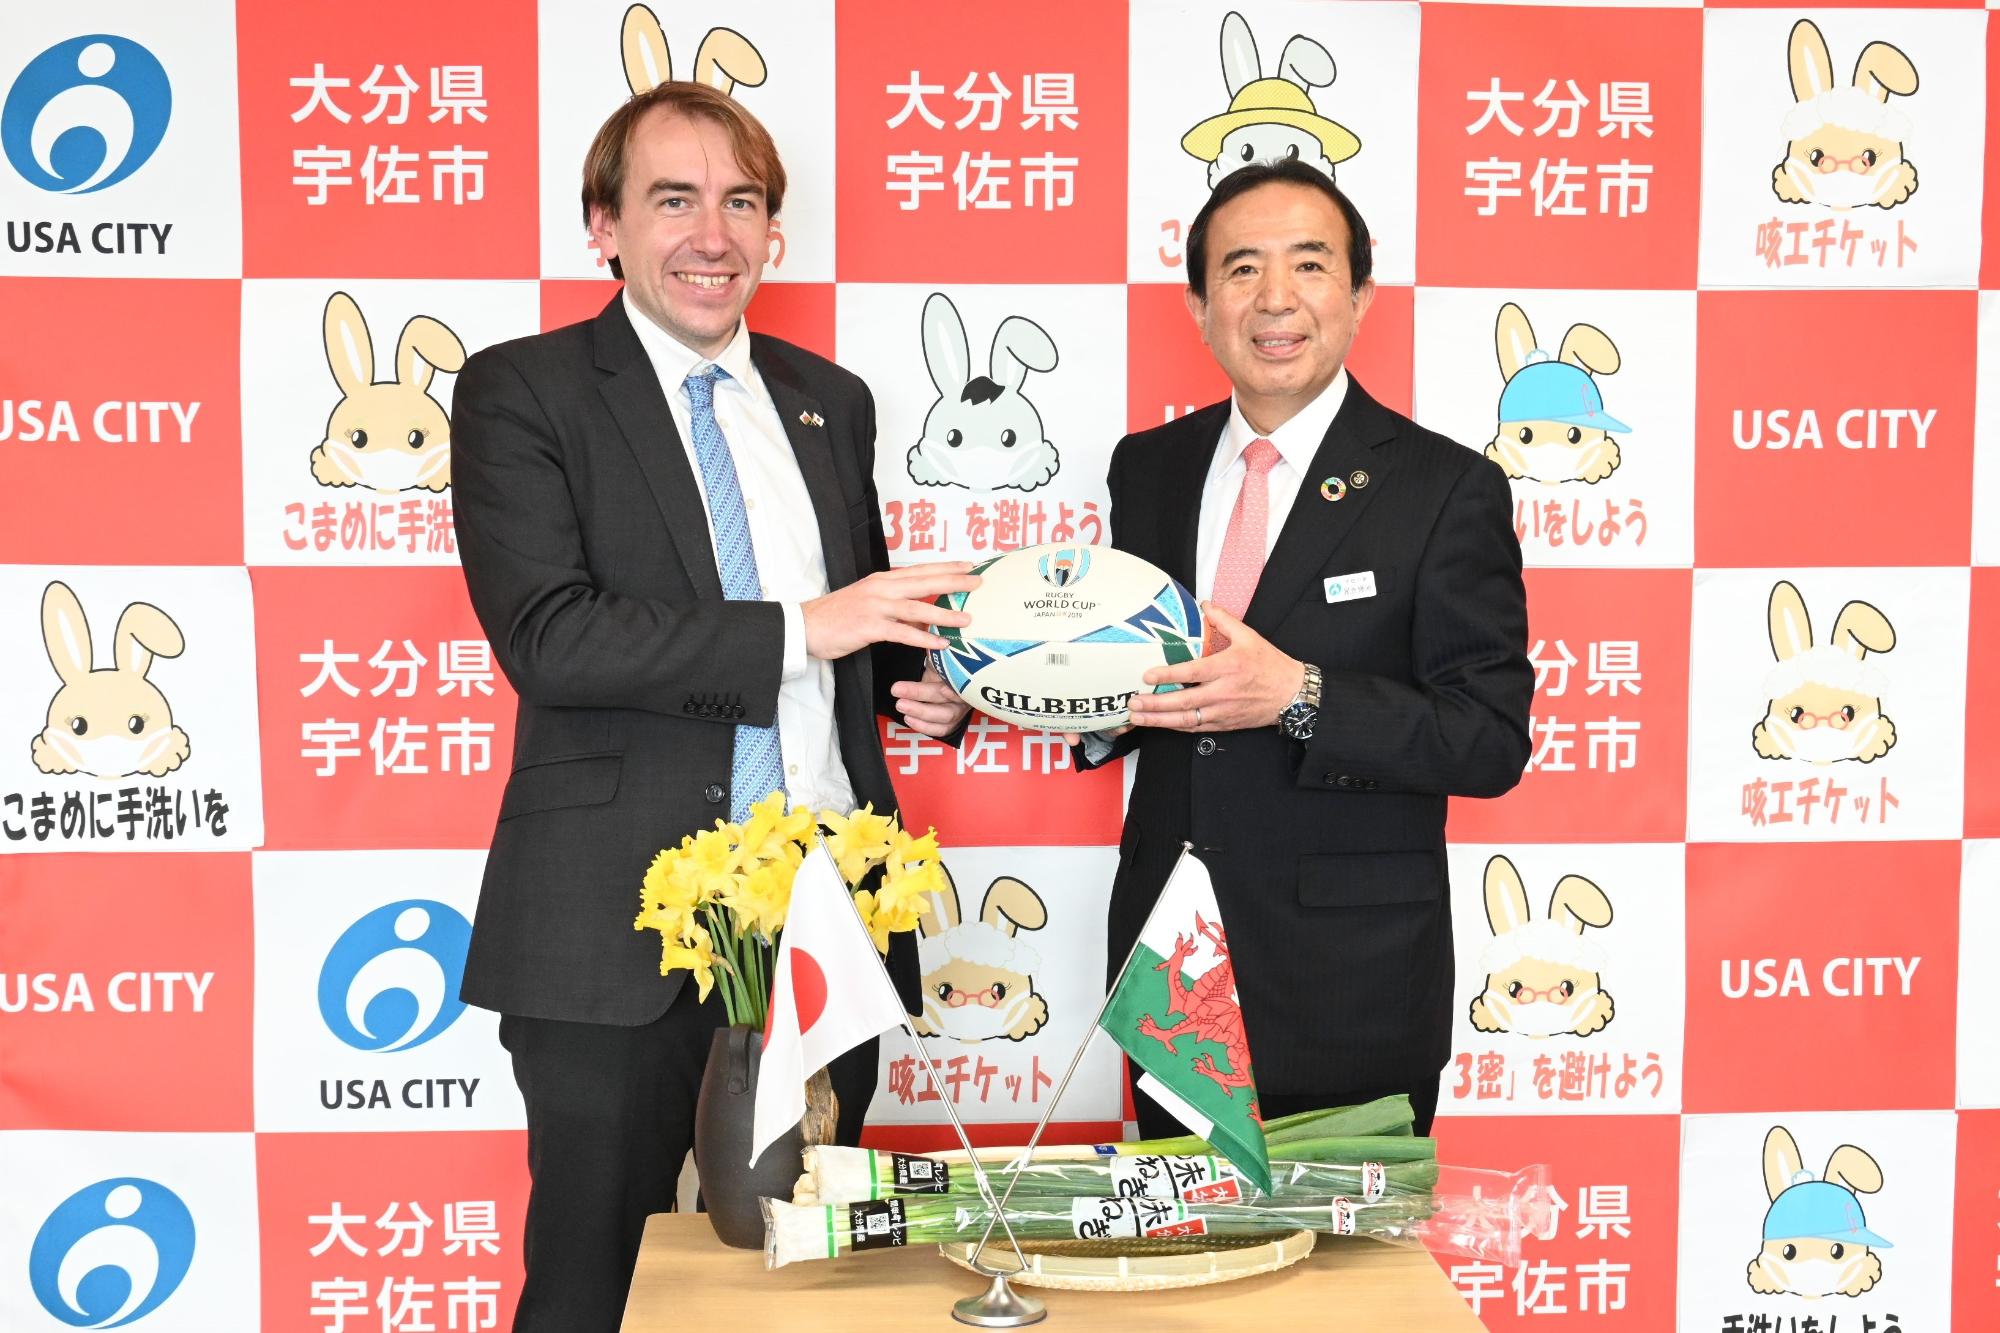 市長とウェールズ政府日本代表記念撮影